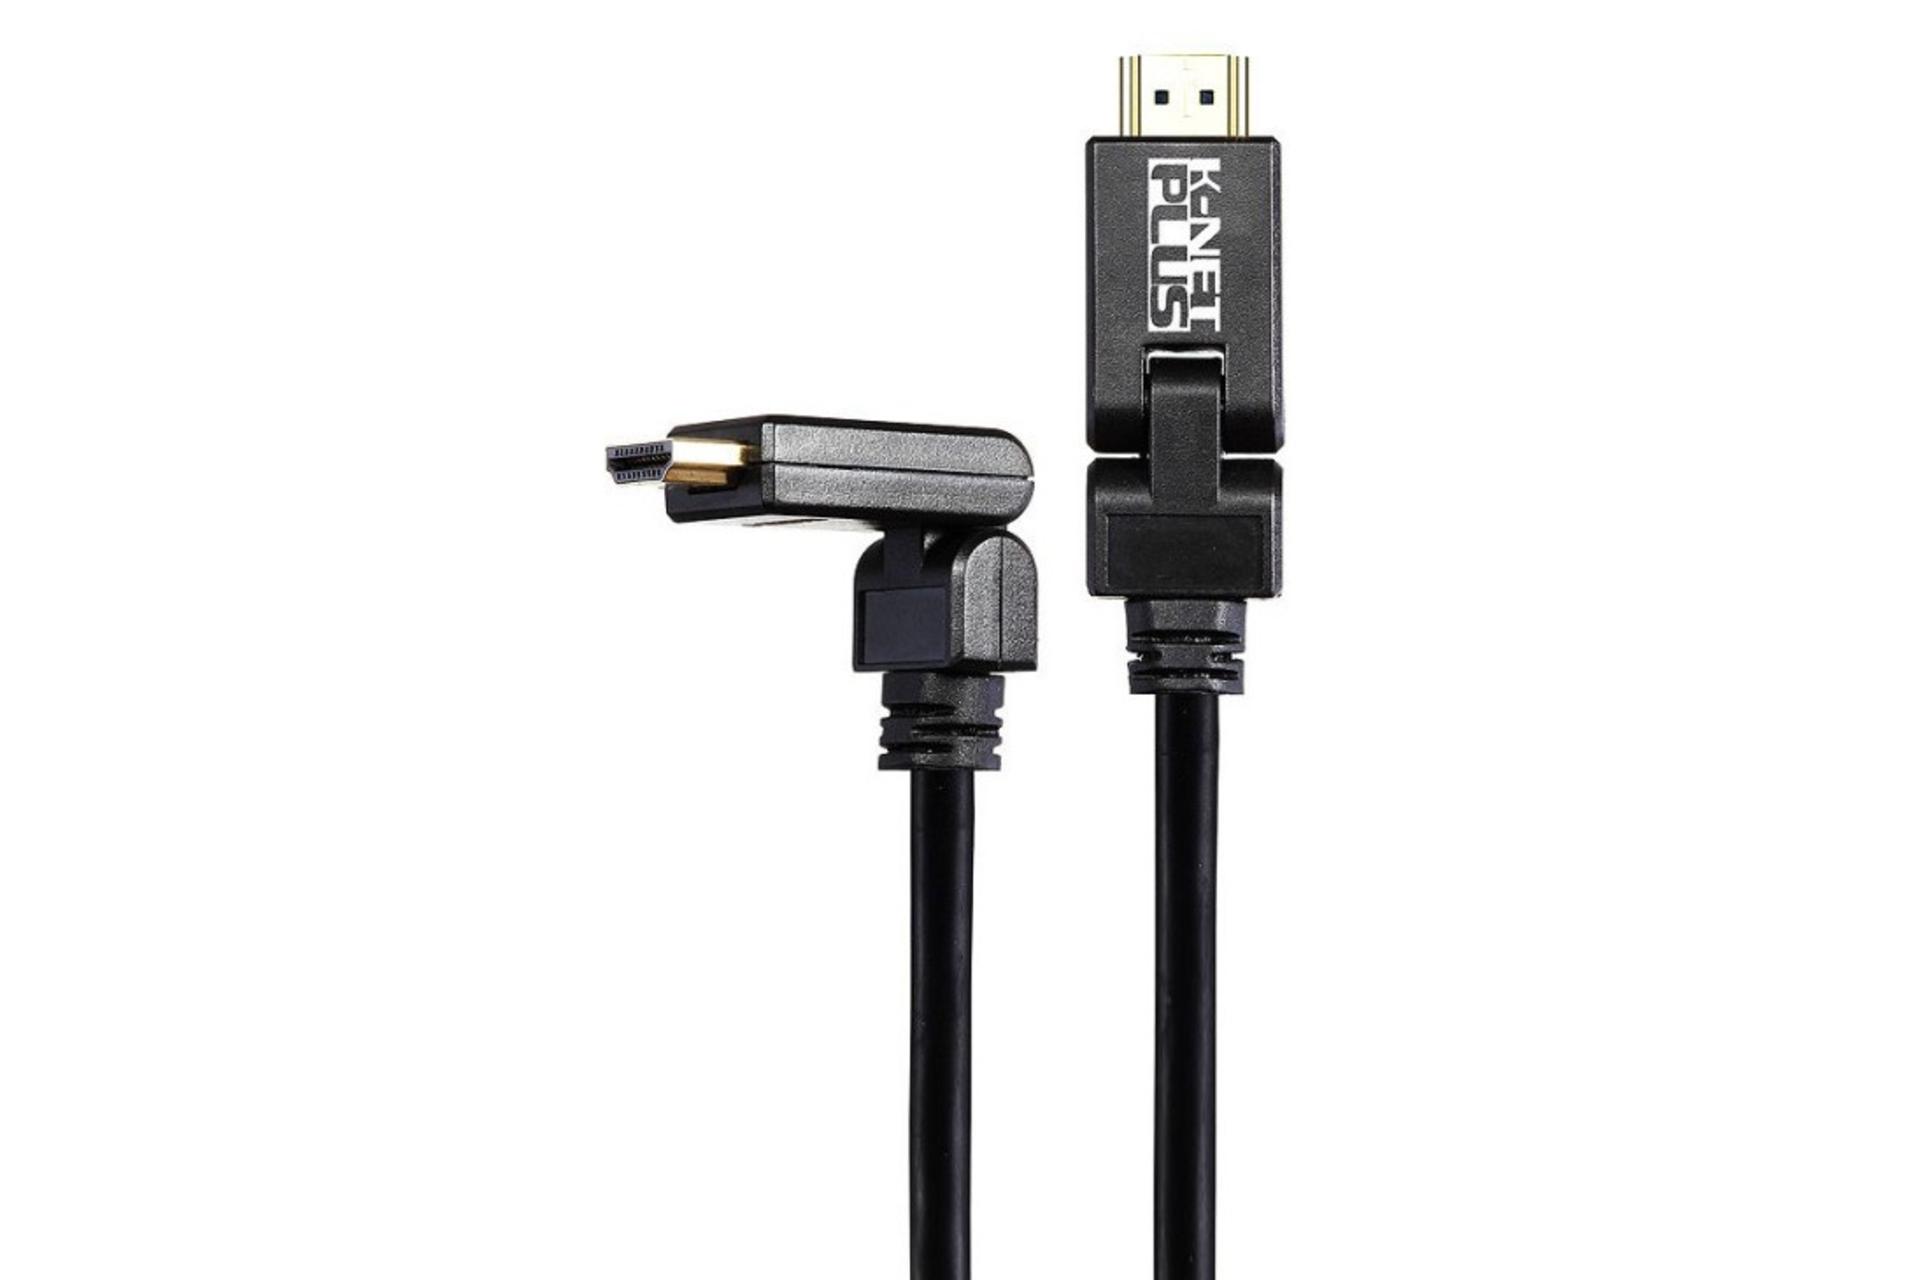 کابل HDMI نسخه 2.0 کی نت پلاس K-Net Plus Rotative KP-CHR2018 4K 60Hz با طول 1.8 متر